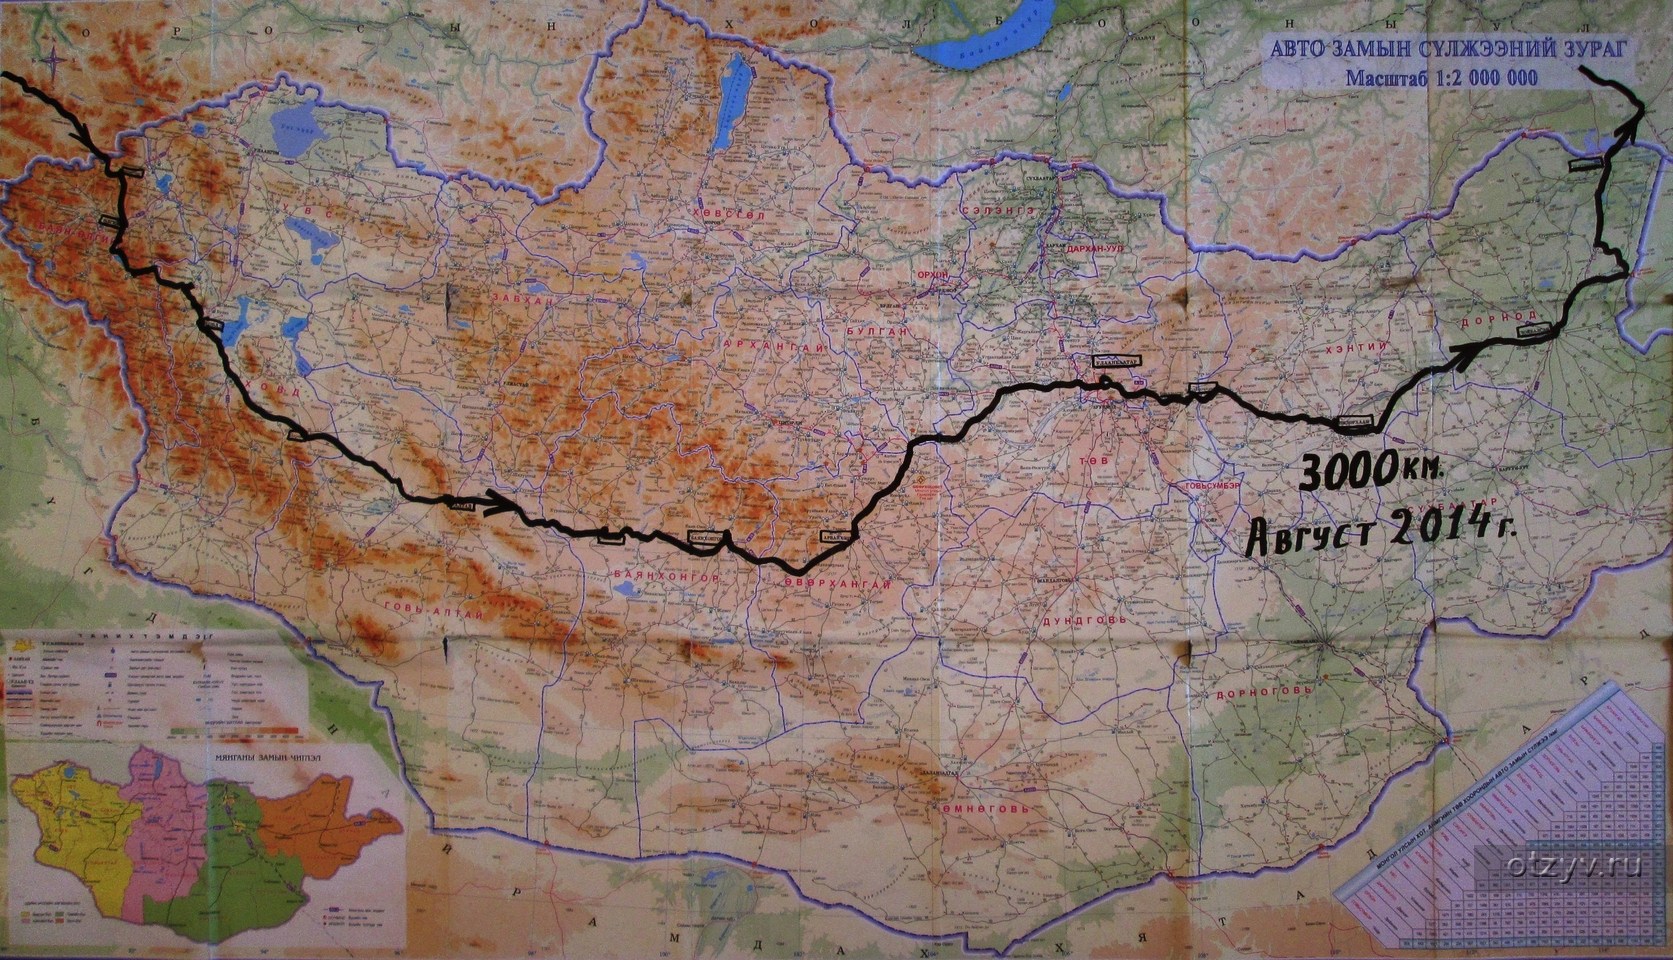 Карта границ монголии - 83 фото